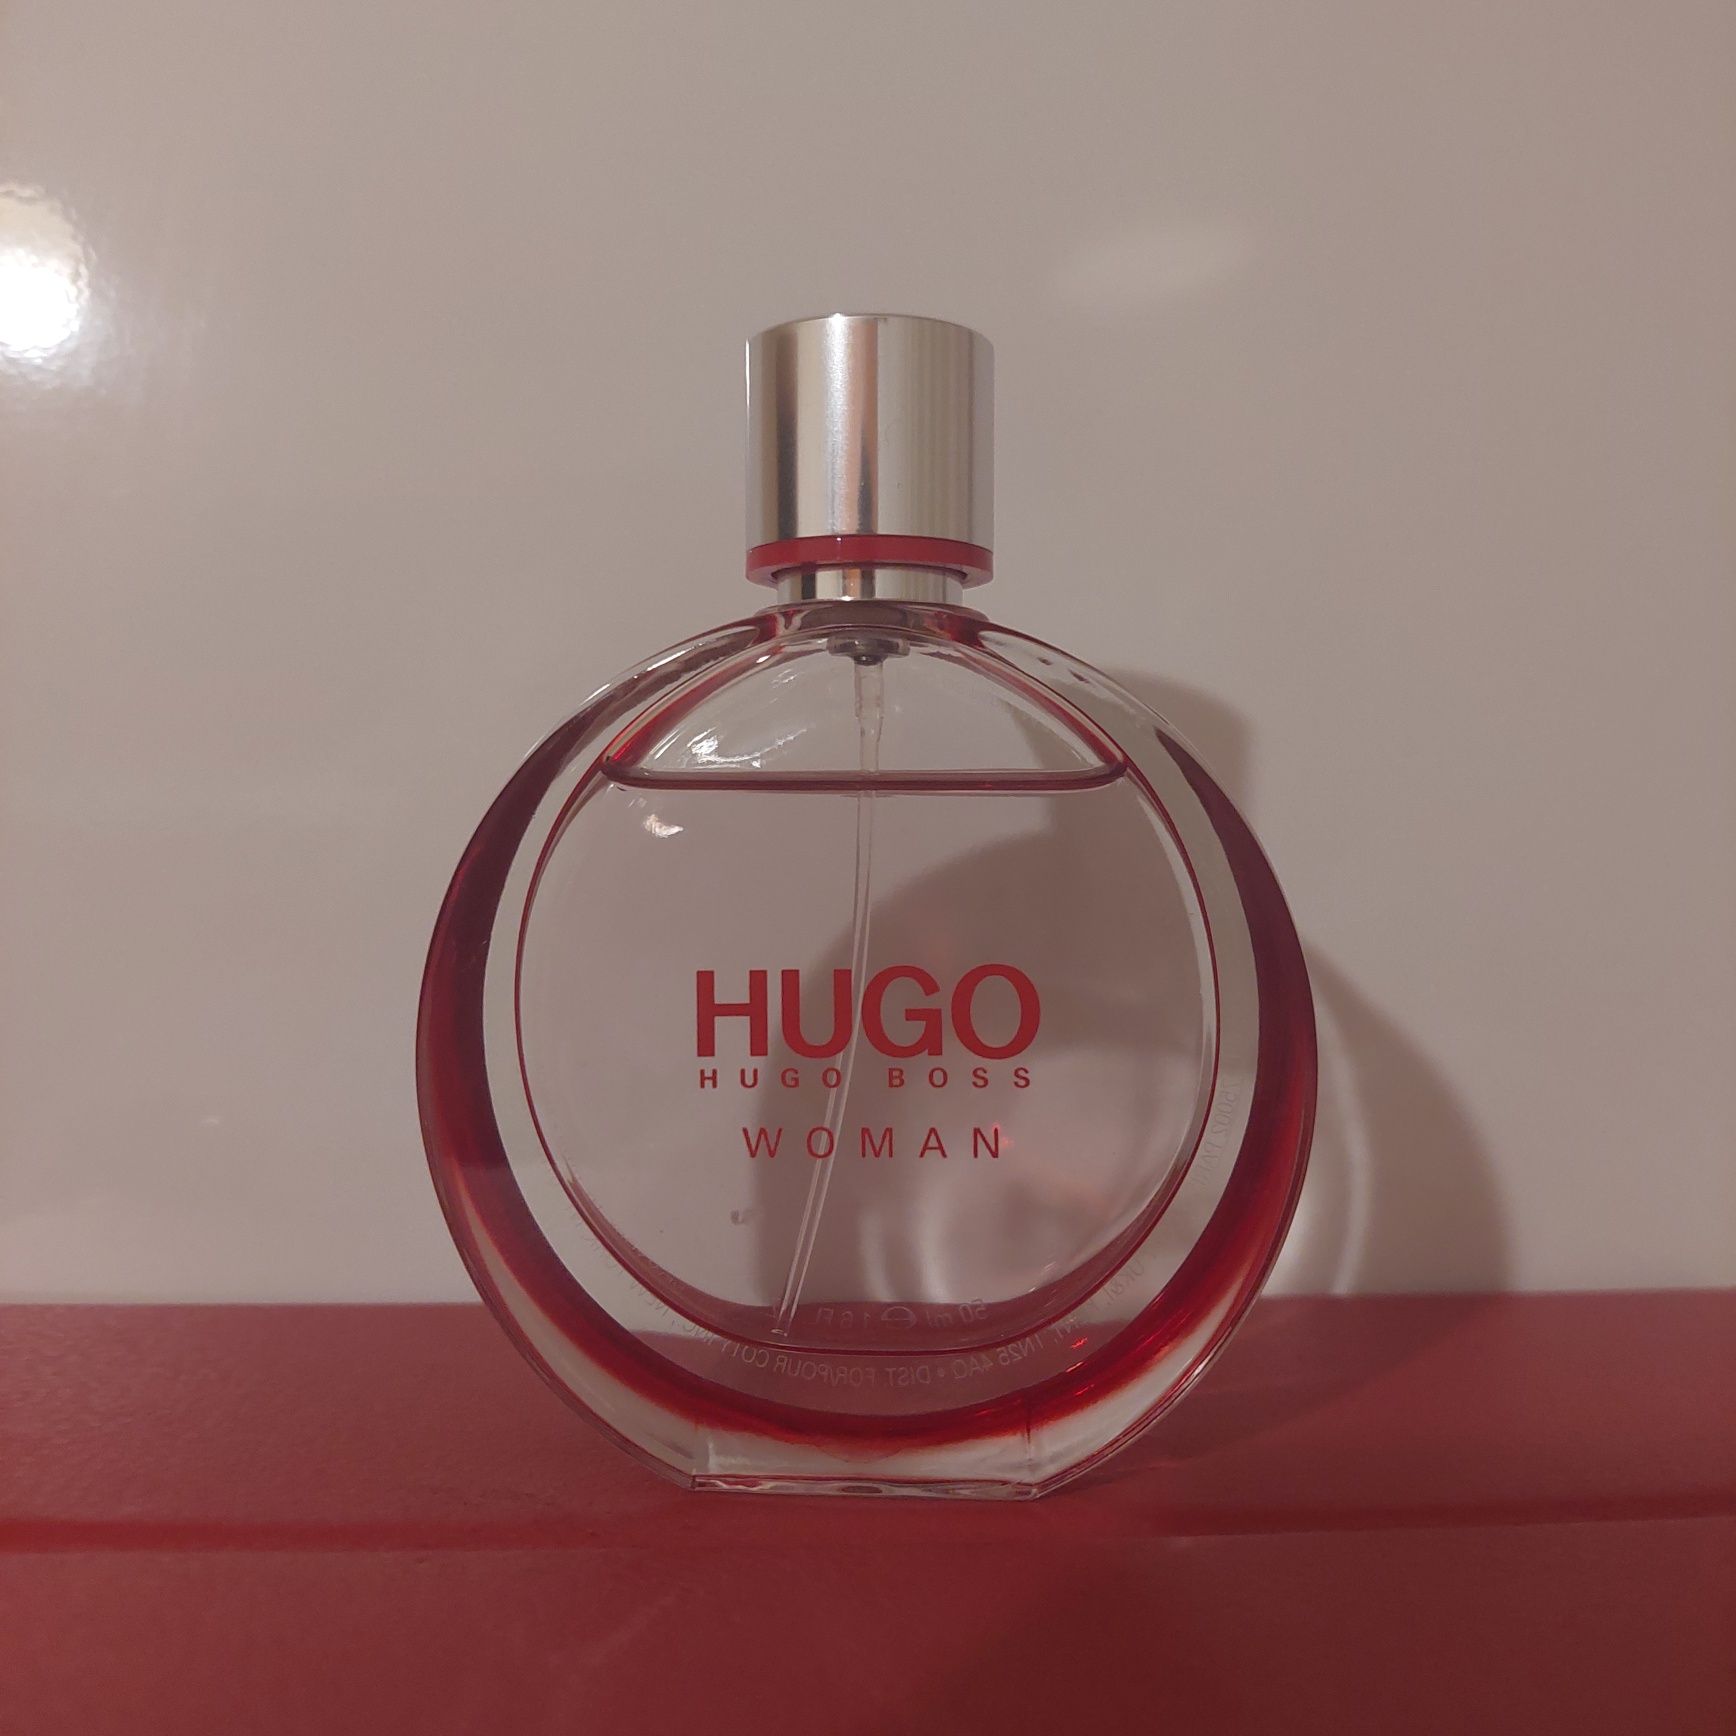 Hugo boss/ Hugo woman,50 ml